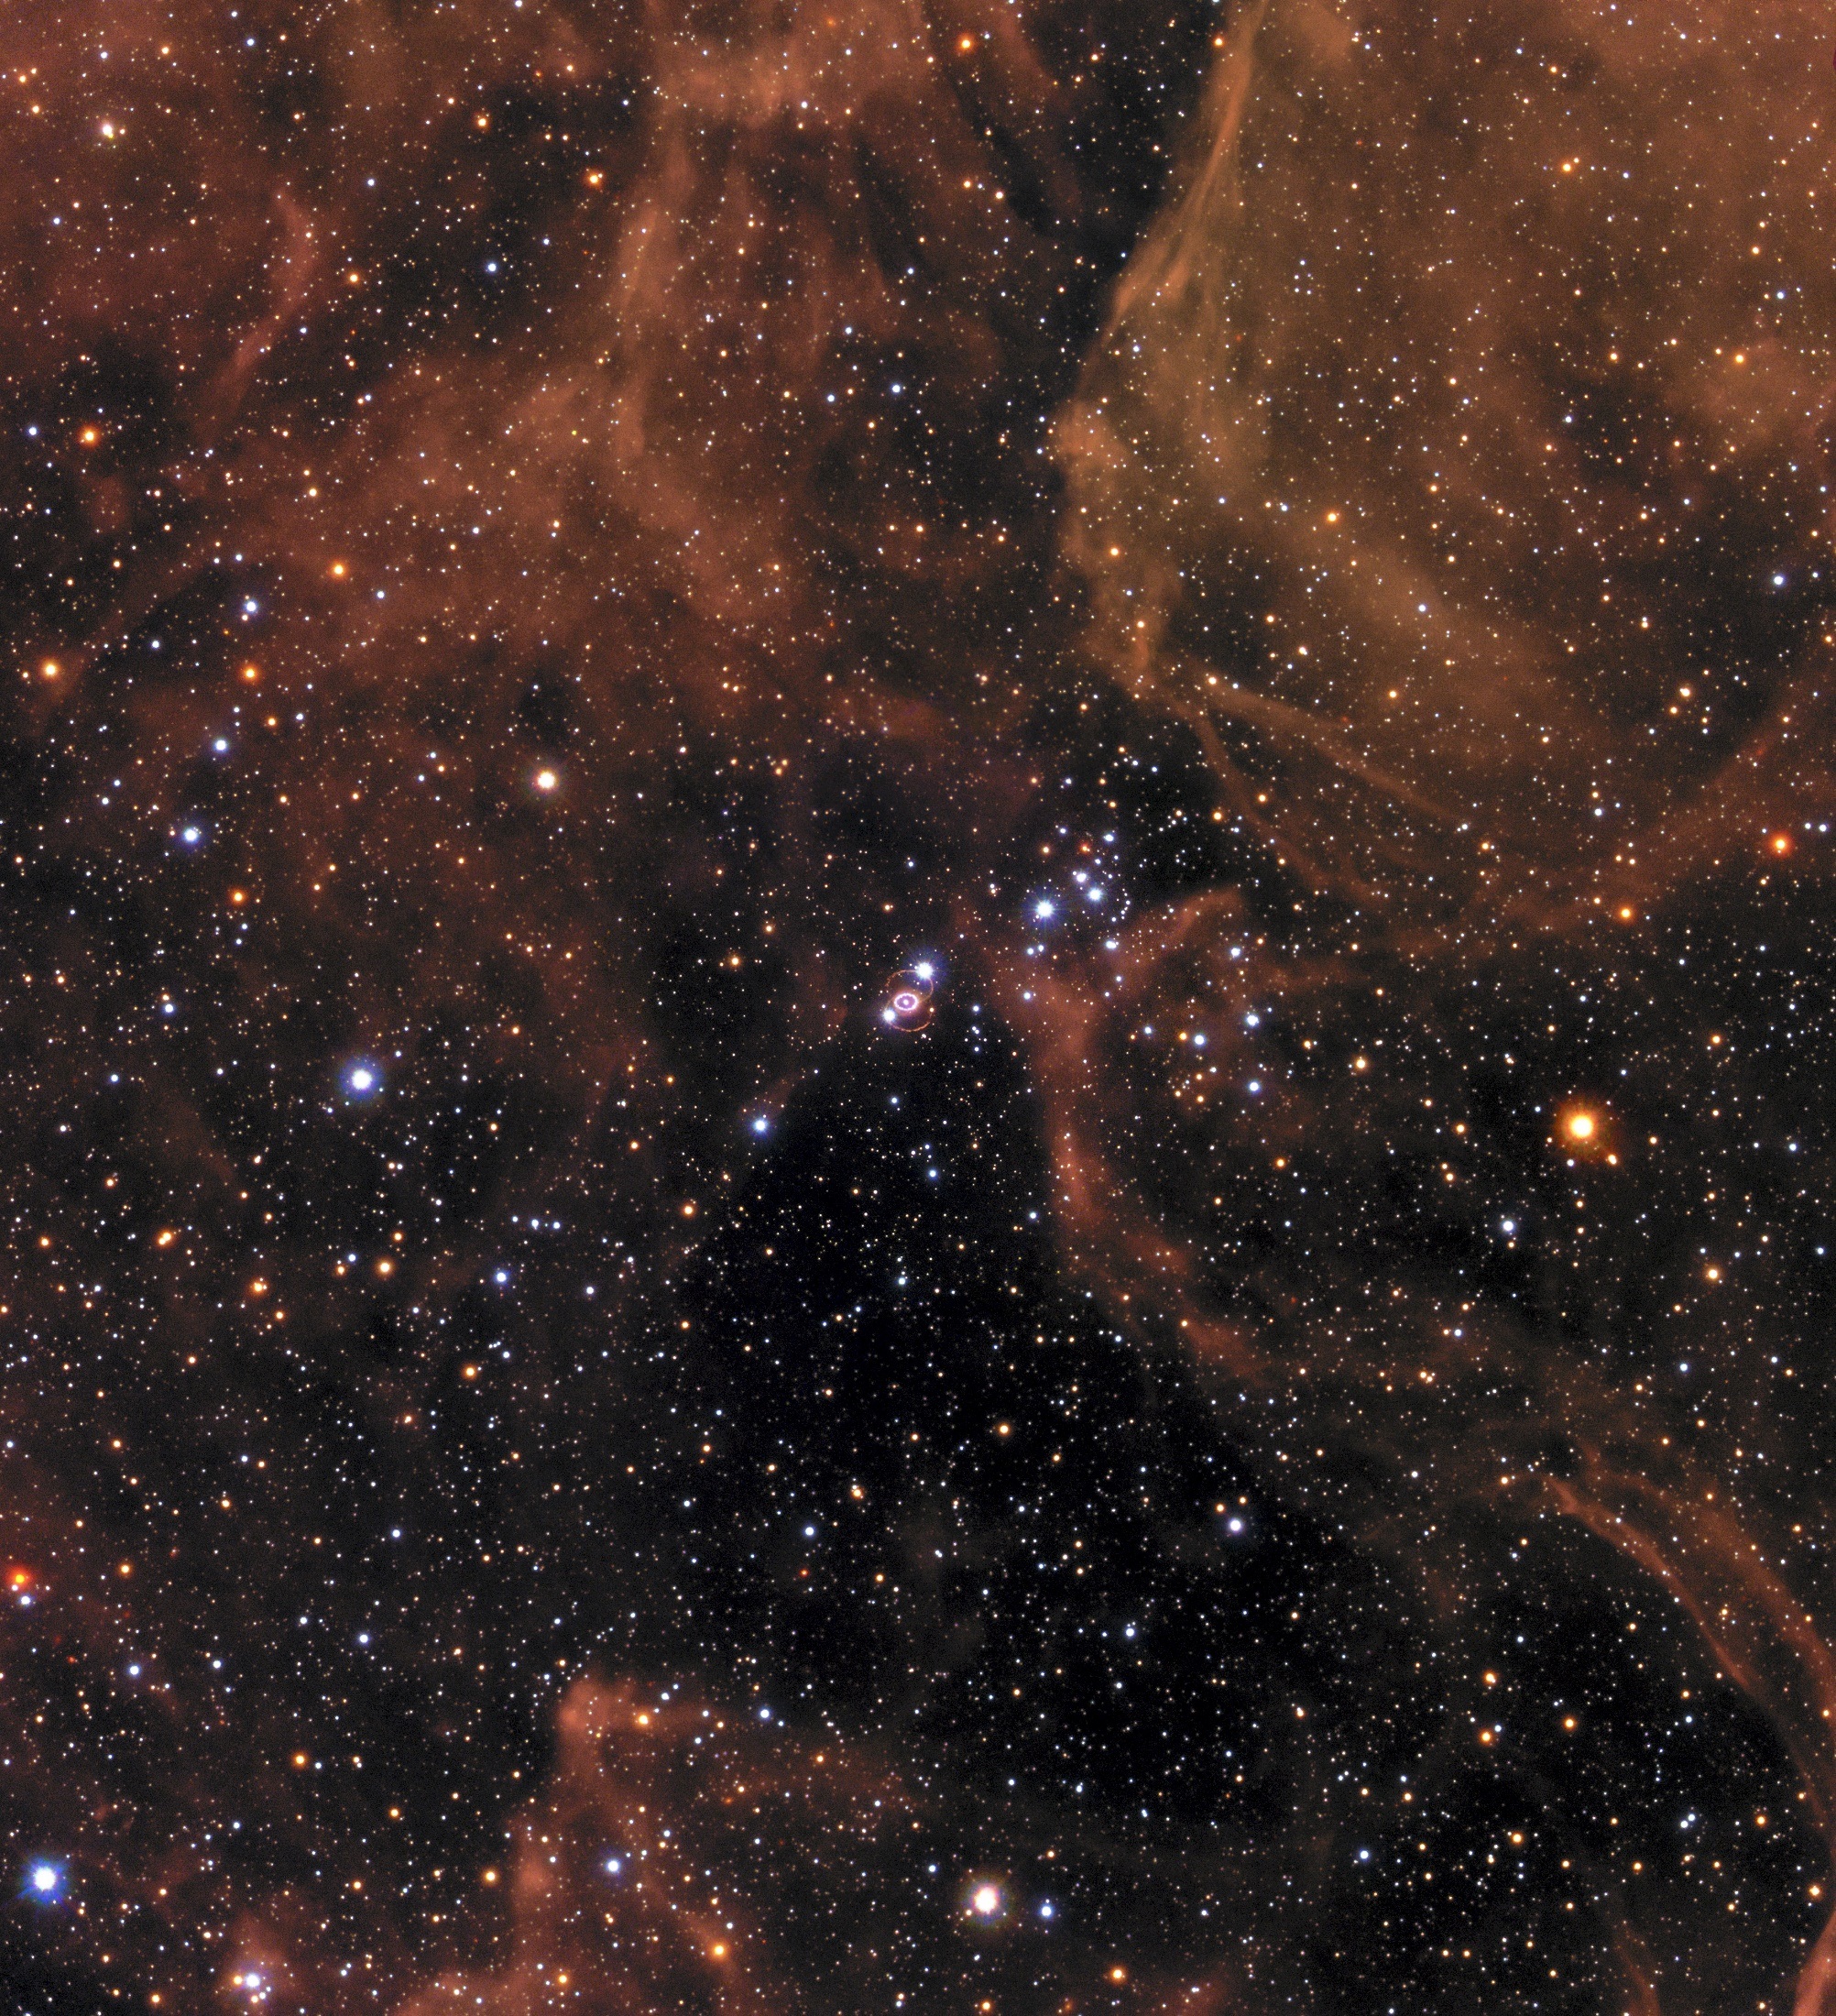 Free Images universe, starry sky, sn 1987a, tarantula nebula Galaxy